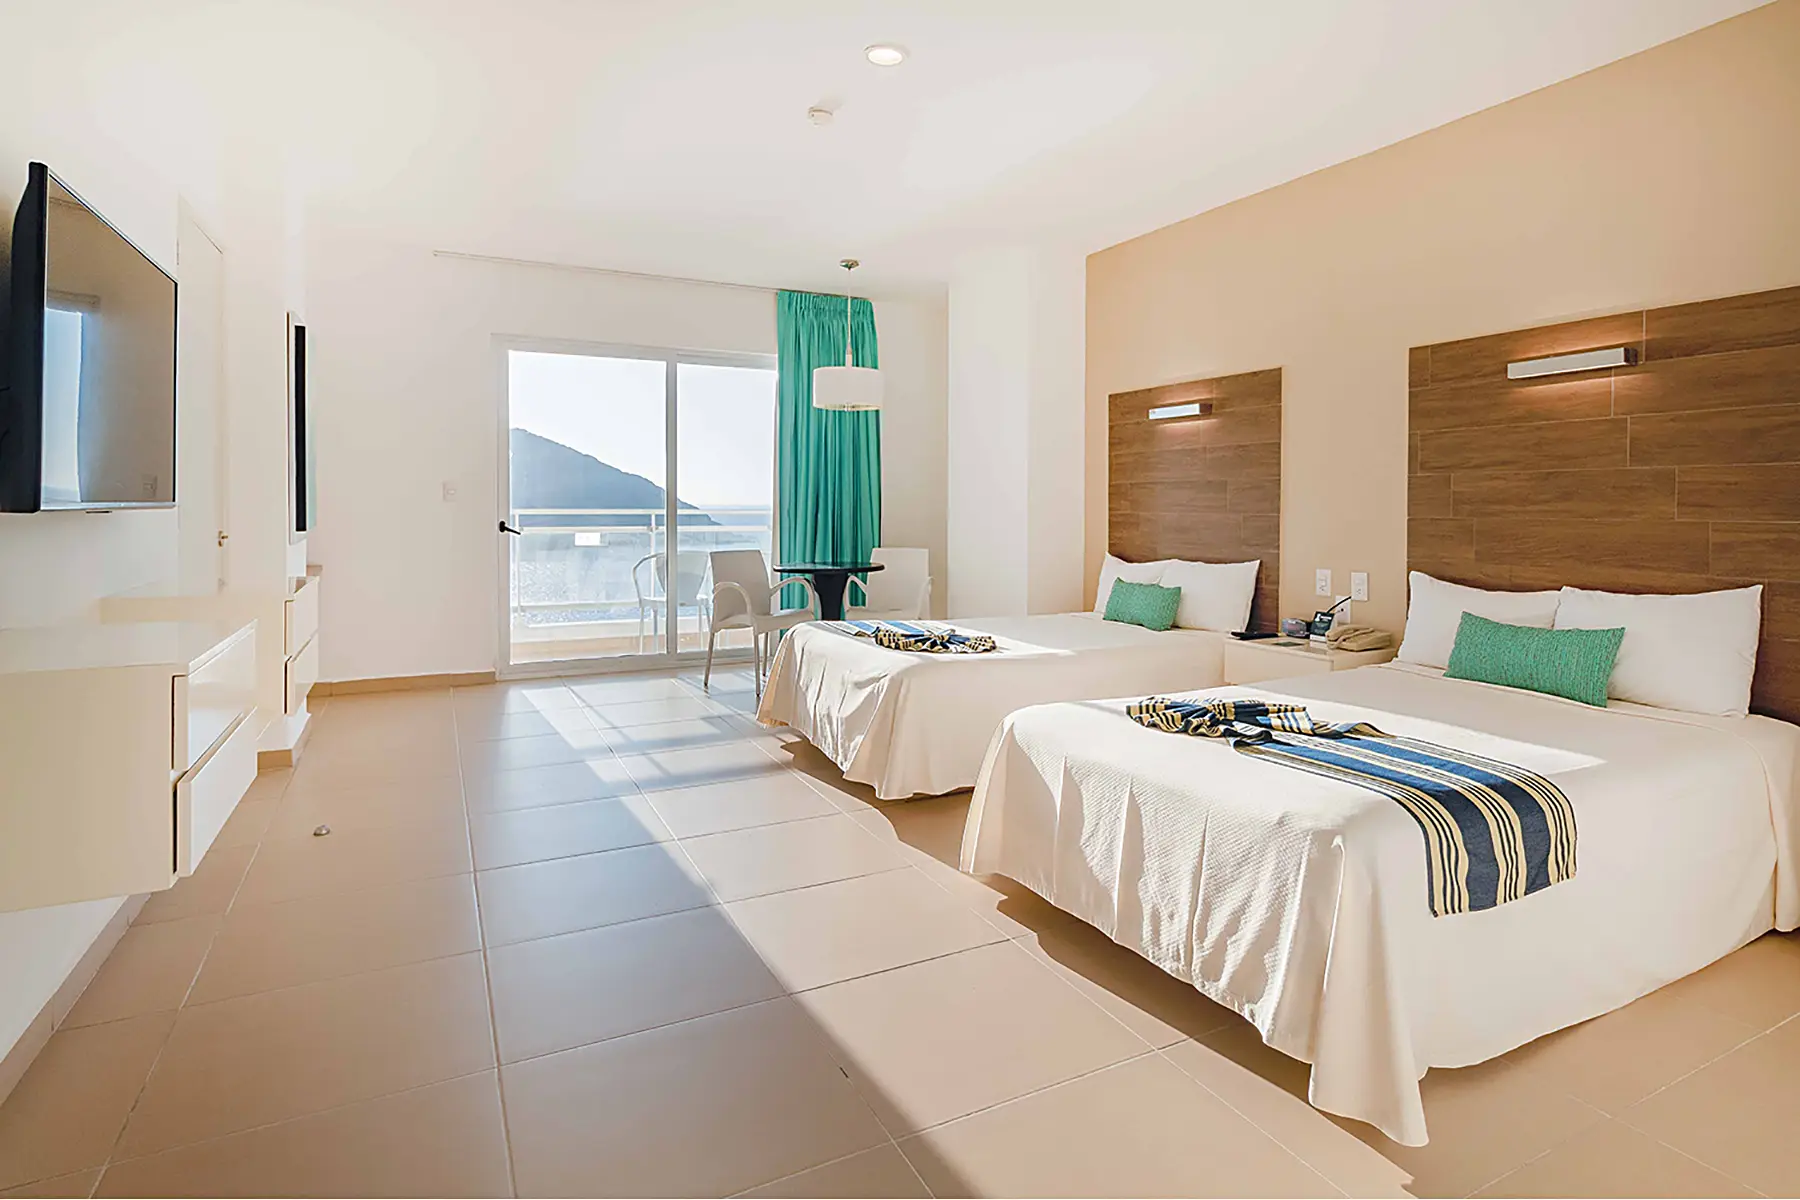 Habitación junior suite vista al mar, dos camas, tv, mesa con dos sillas, mobiliario,luminaria, hotel pacific palace, mazatlán